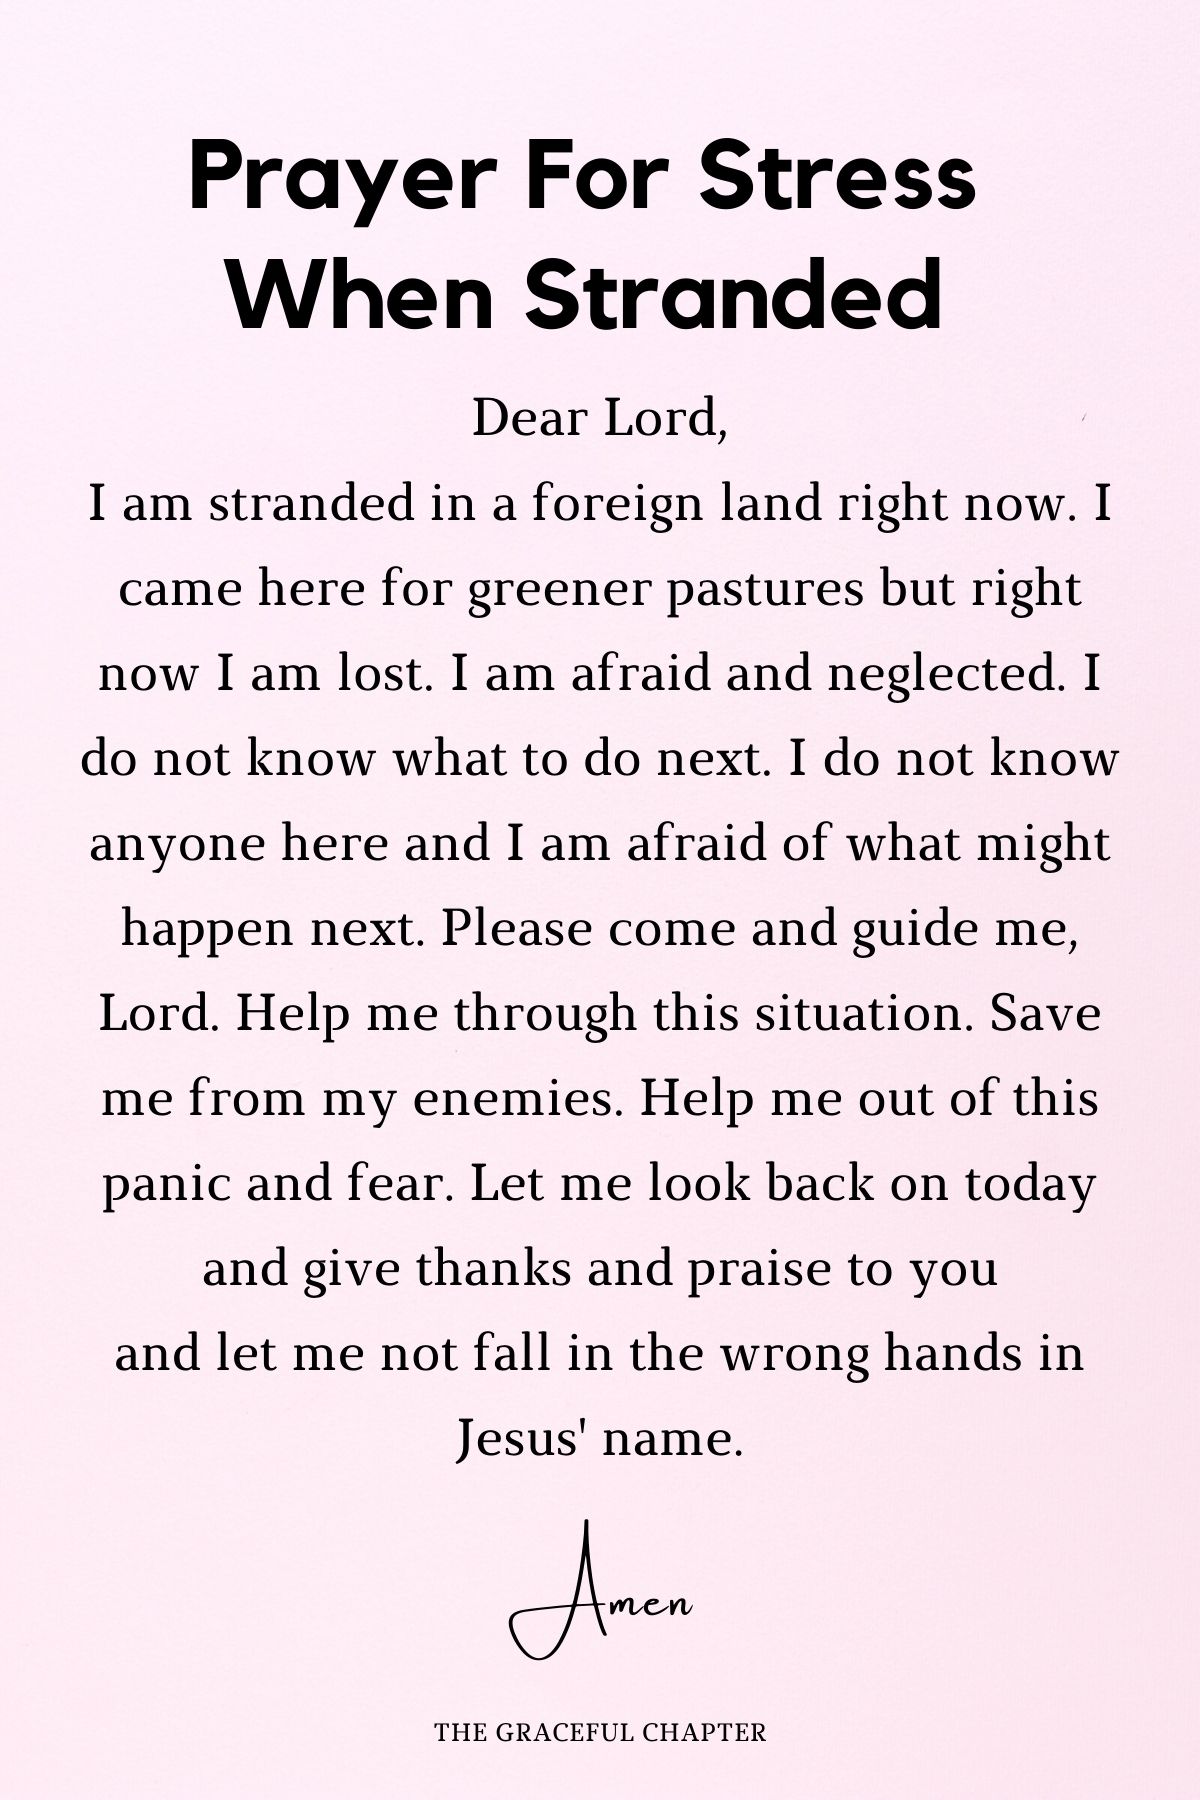 Prayer for stress when stranded